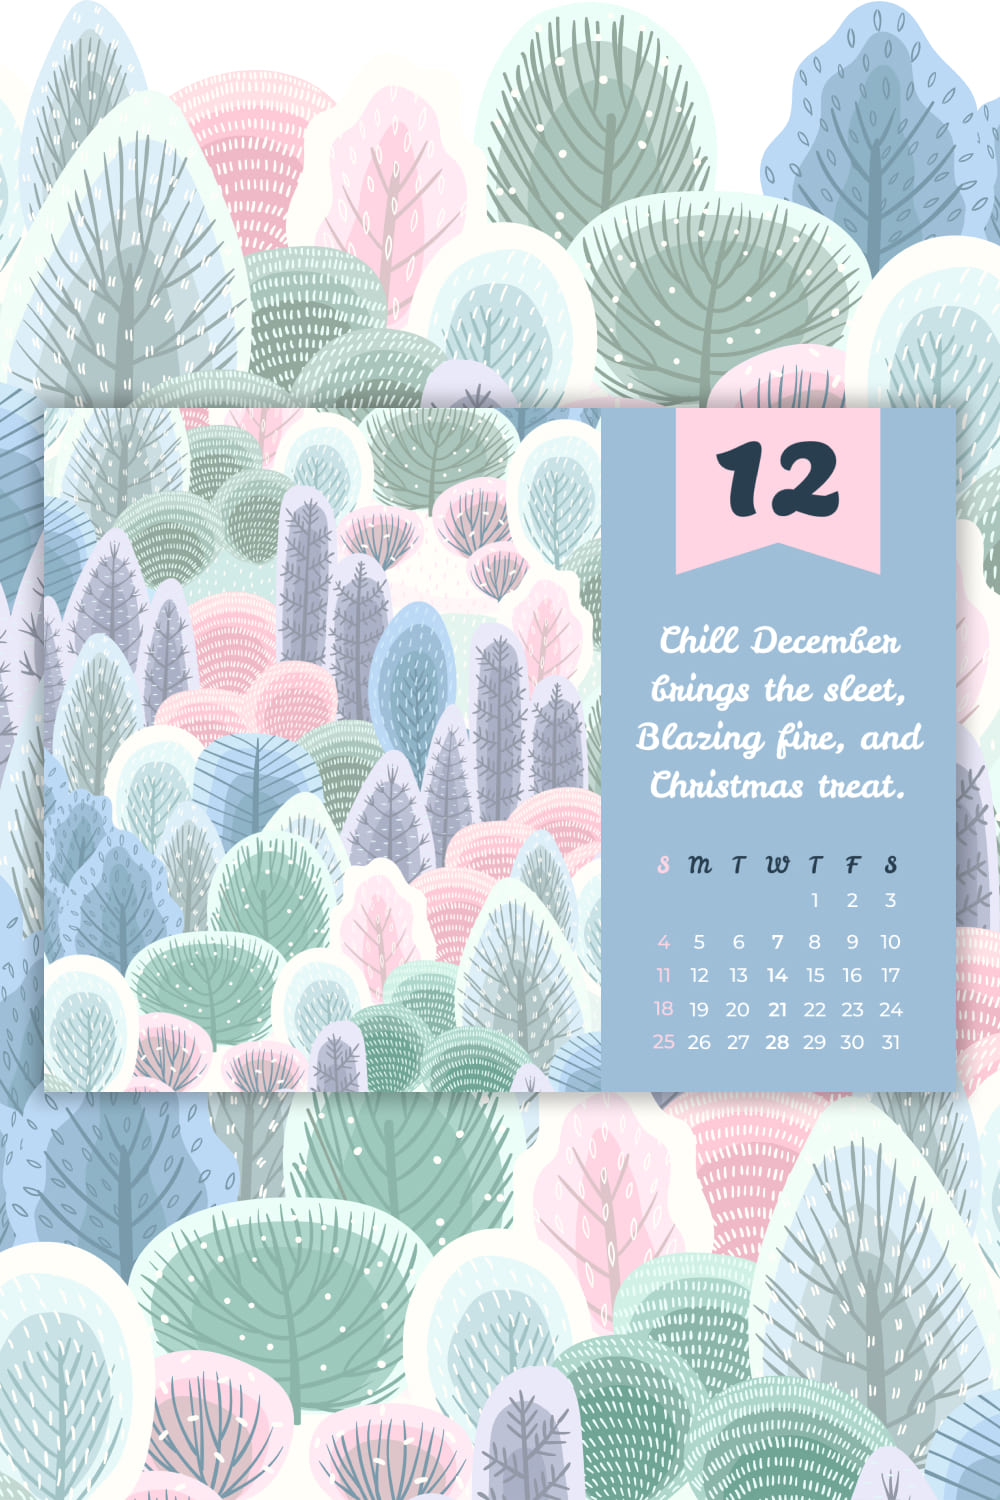 Free December Cute Calendar - Pinterest.